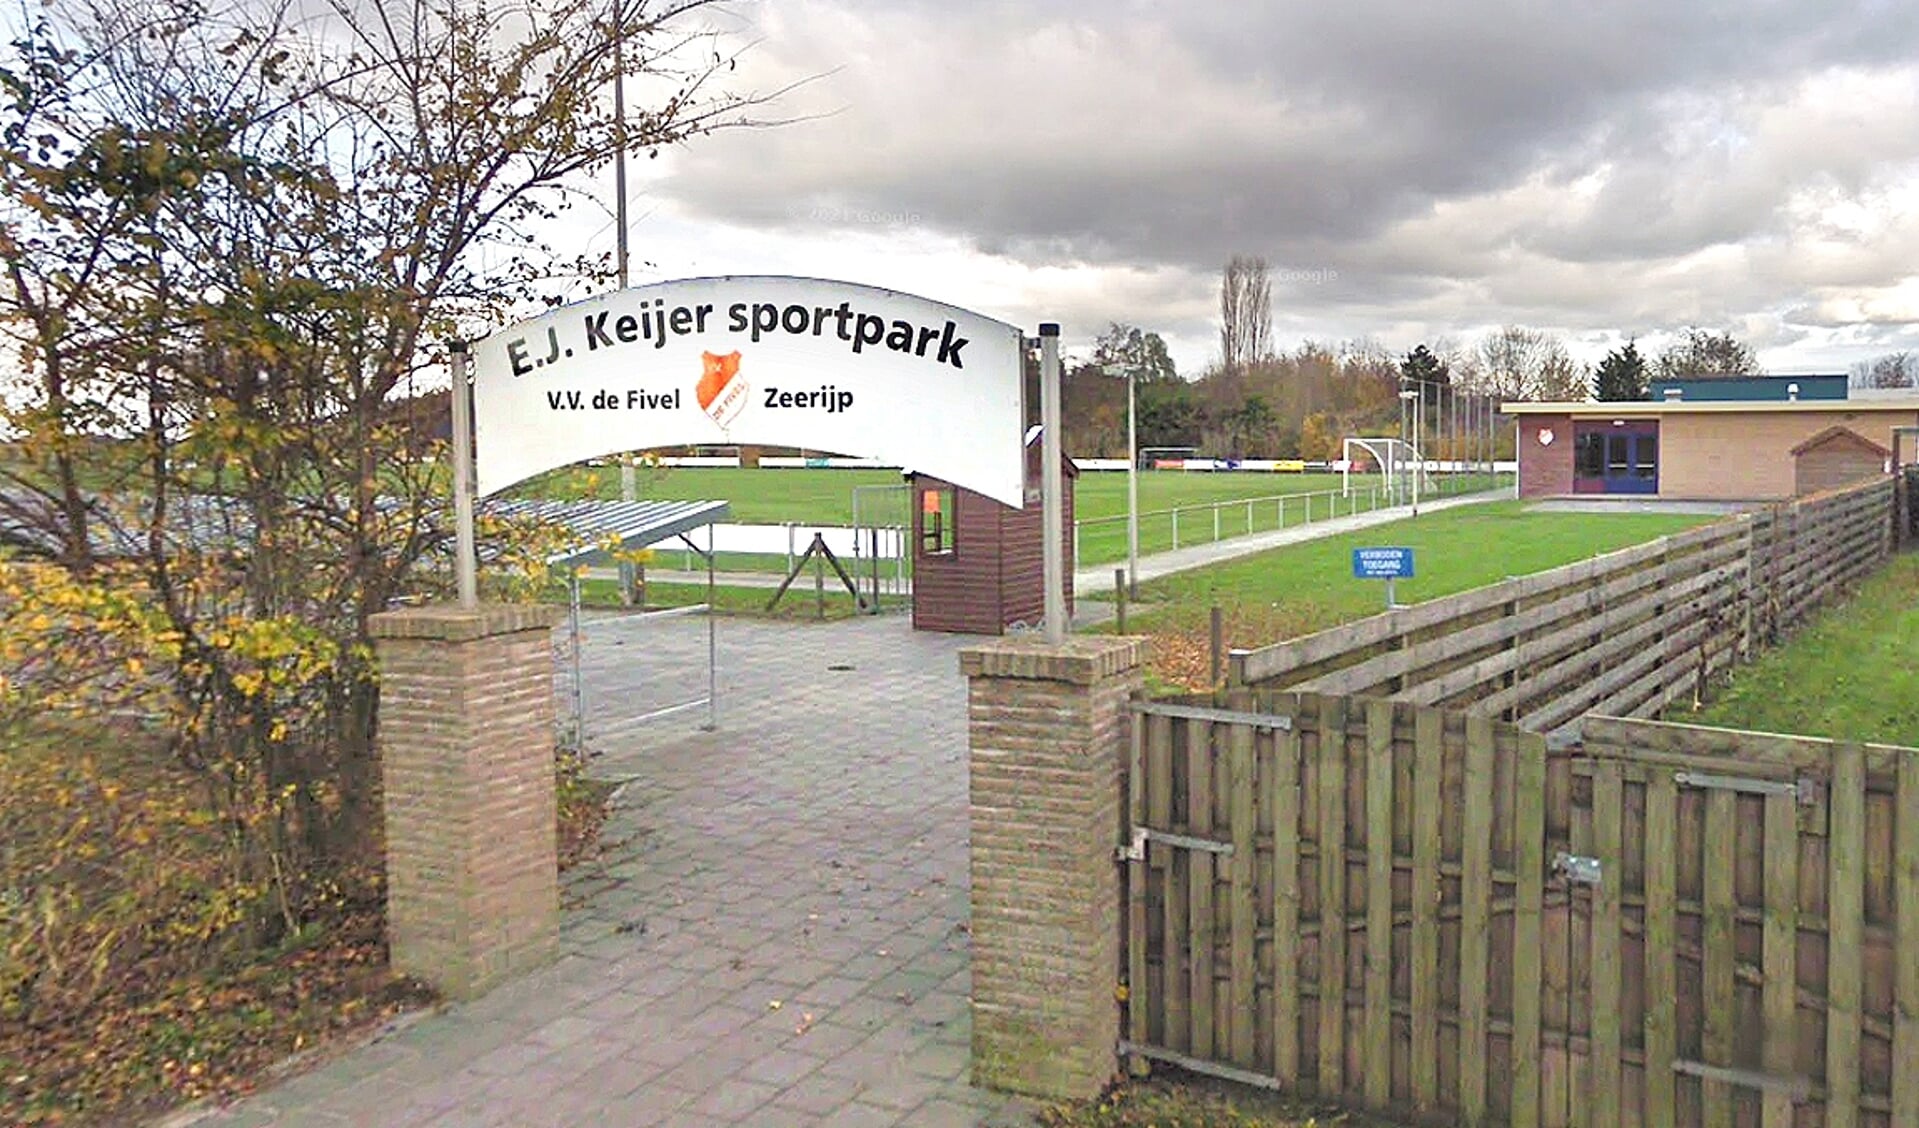 Het sportcomplex van De Fivel in Zeerijp is nu helemaal aardgasvrij (archieffoto).